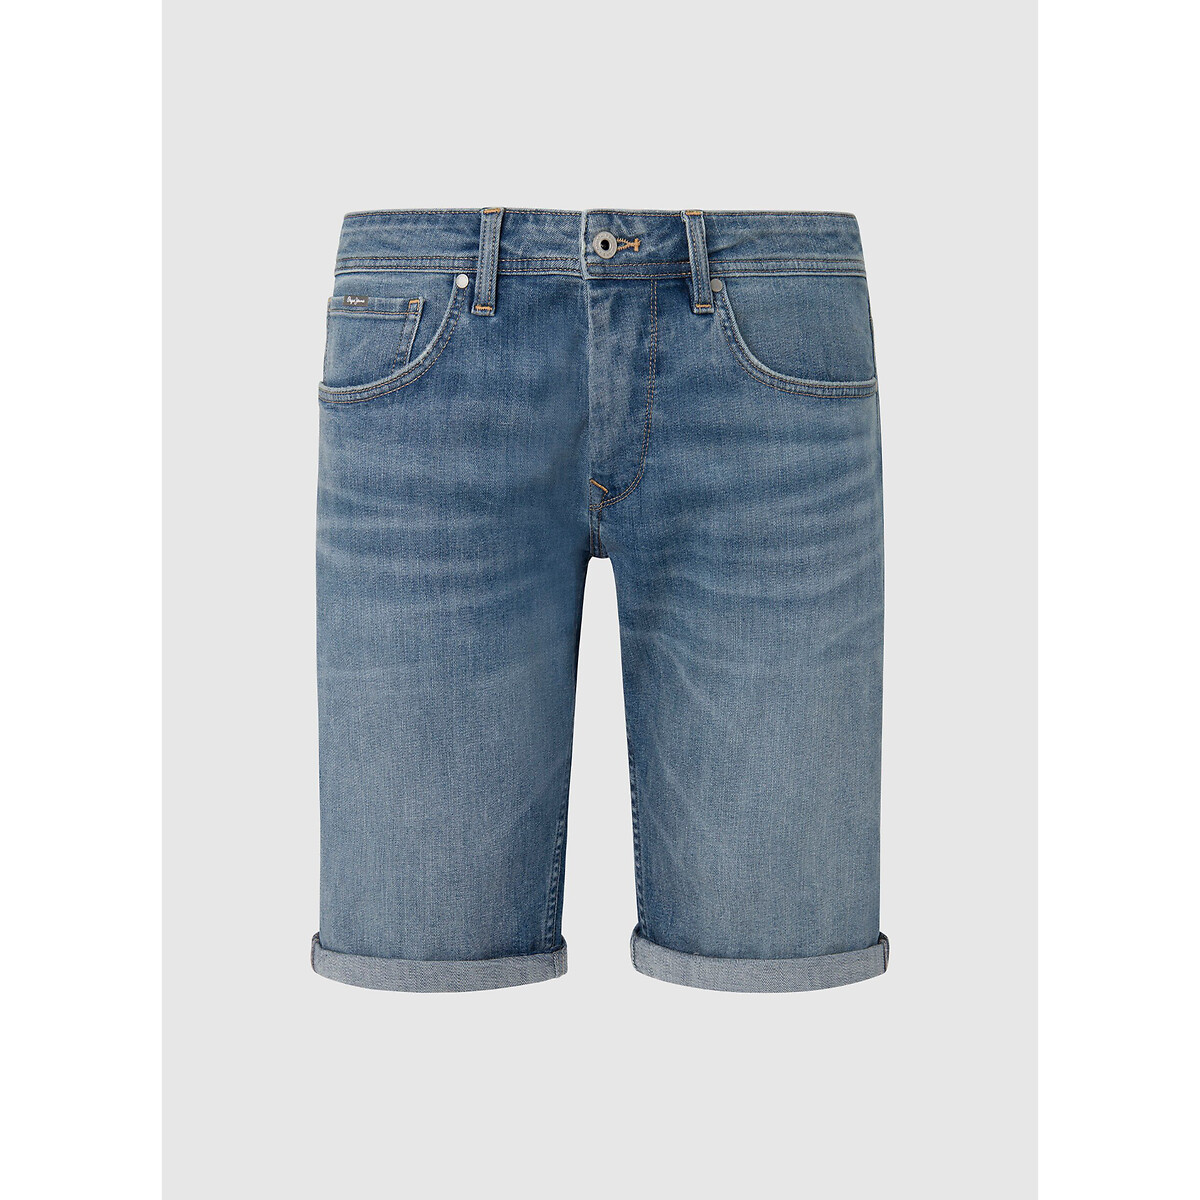 Шорты из джинсовой ткани прямого покроя  34 (US) синий LaRedoute, размер 34 (US)